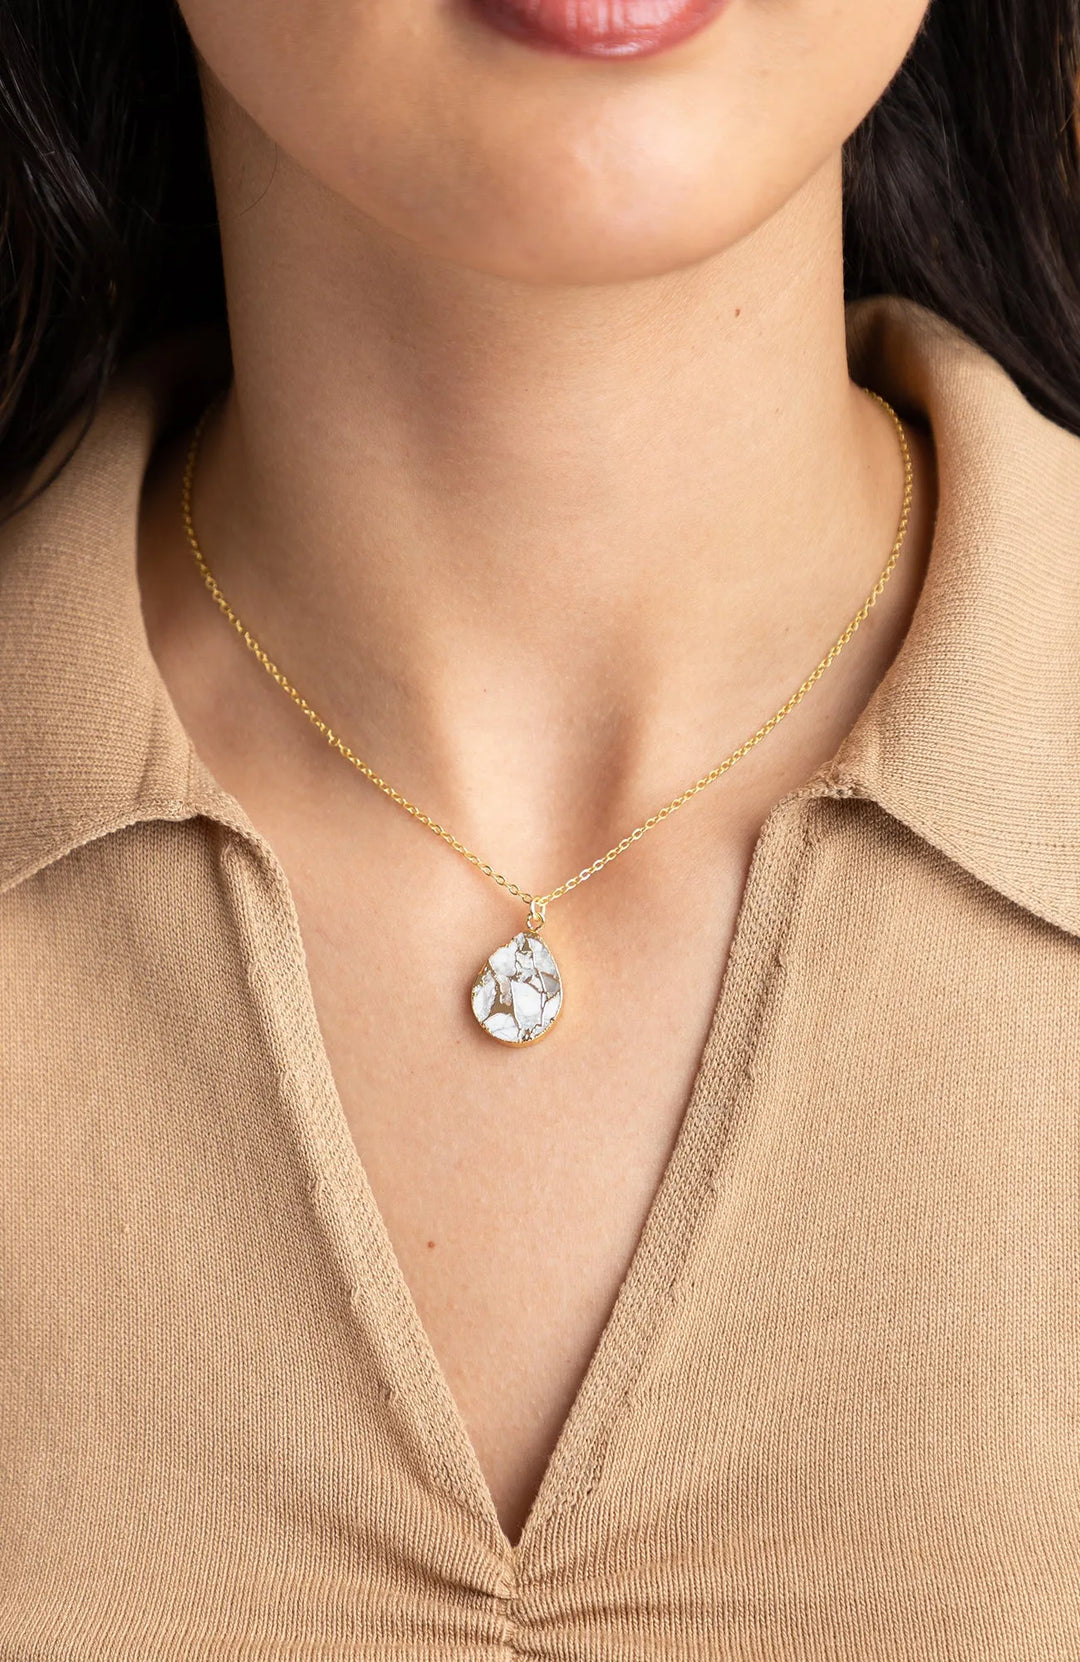 Mojave Pear Shape Mixed Gemstone Pendant Necklace White 